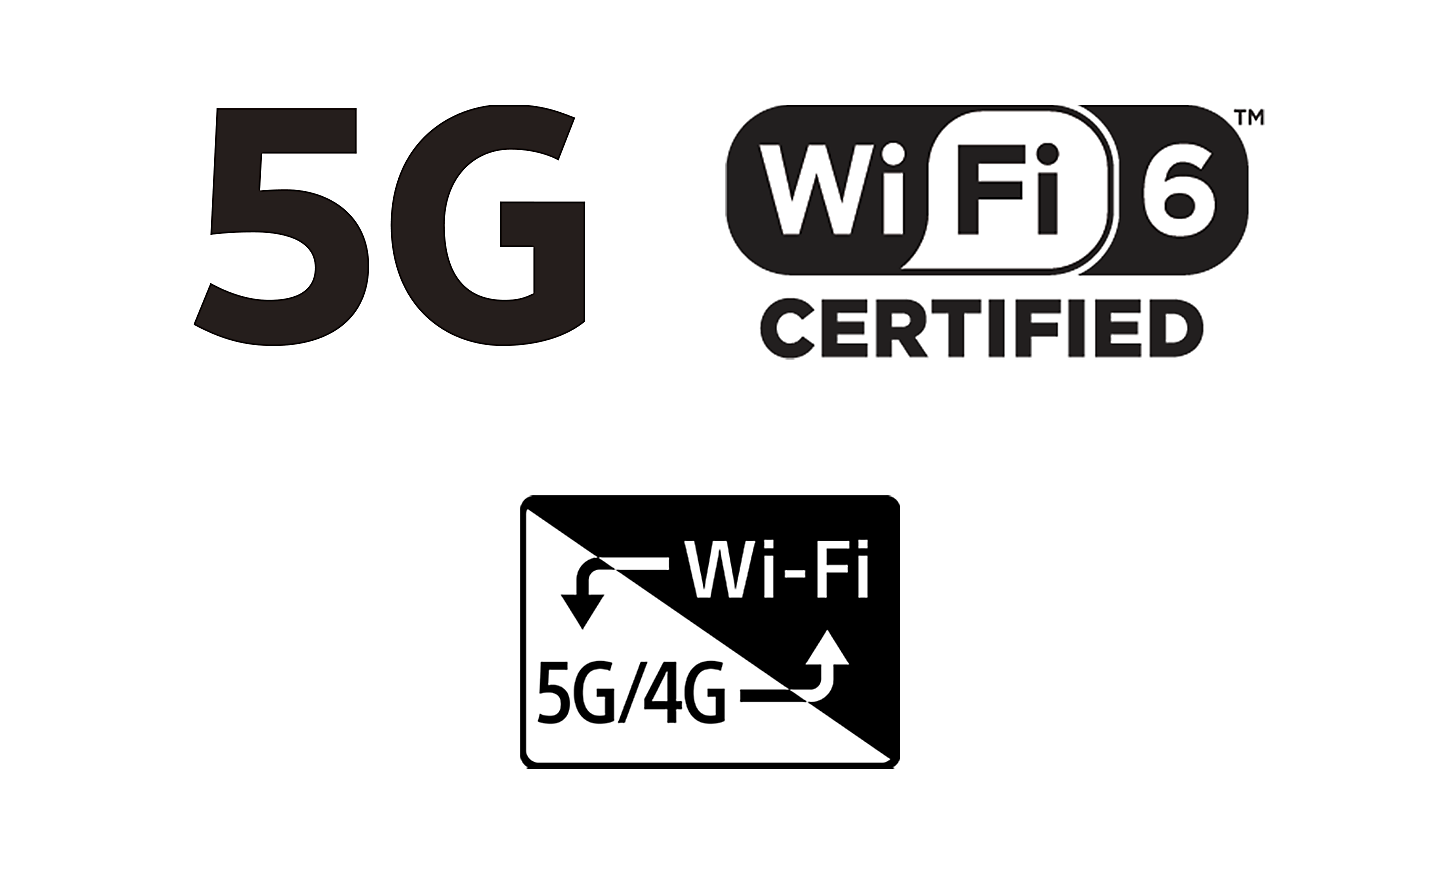 Logá siete 5G a rozhraní Wi-Fi 6 a Wi-Fi 5G/4G